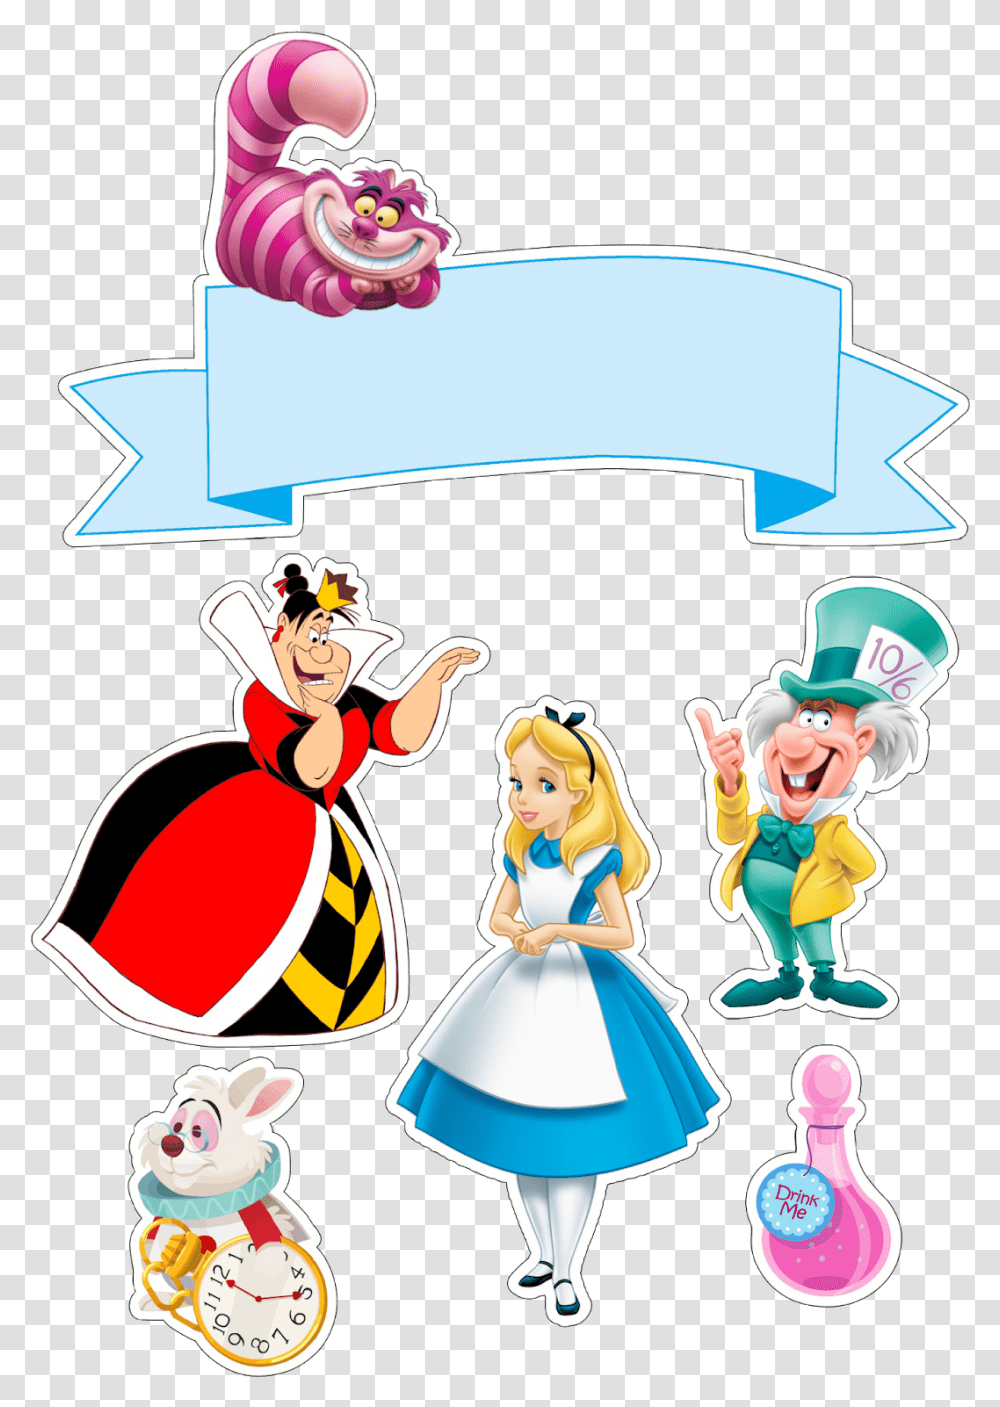 Alice In Wonderland Images Cartoon Mad Hatter Alice In Wonderland, Elf, Performer, Figurine Transparent Png